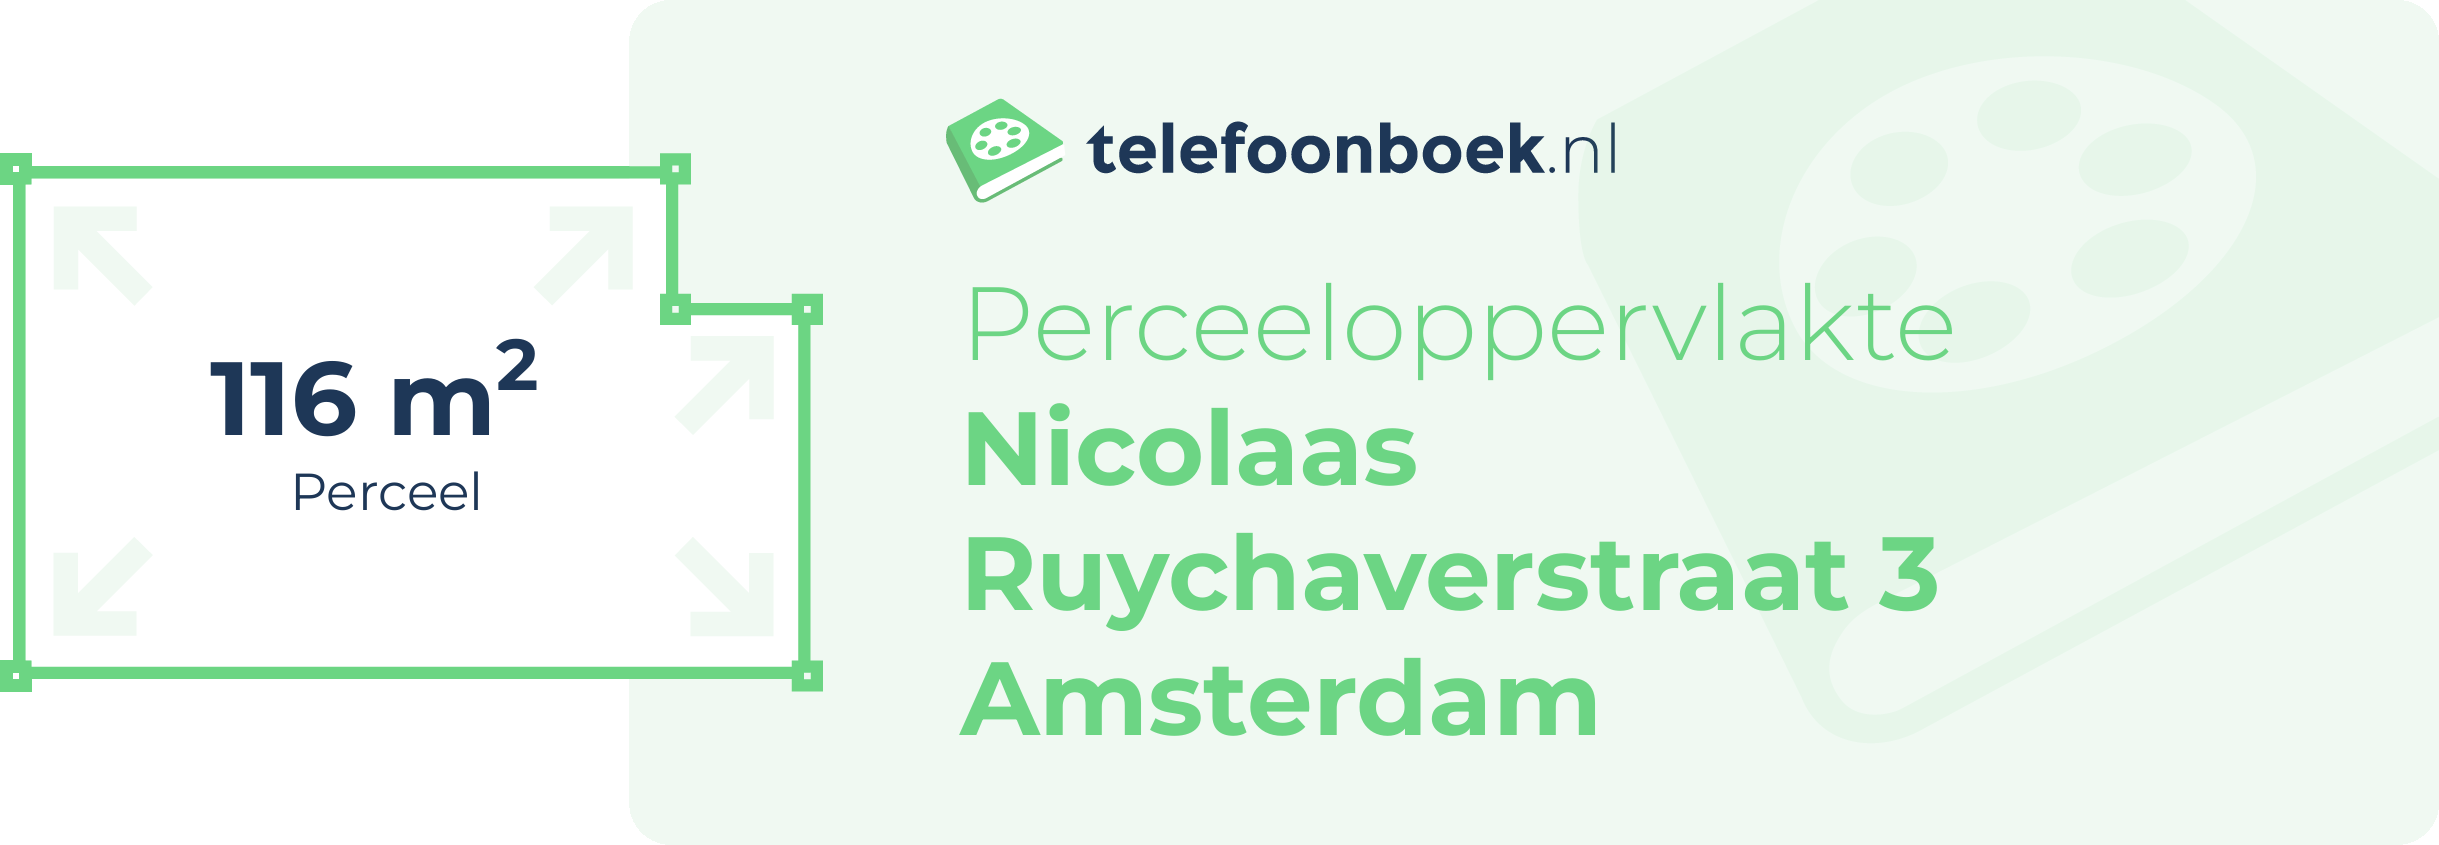 Perceeloppervlakte Nicolaas Ruychaverstraat 3 Amsterdam